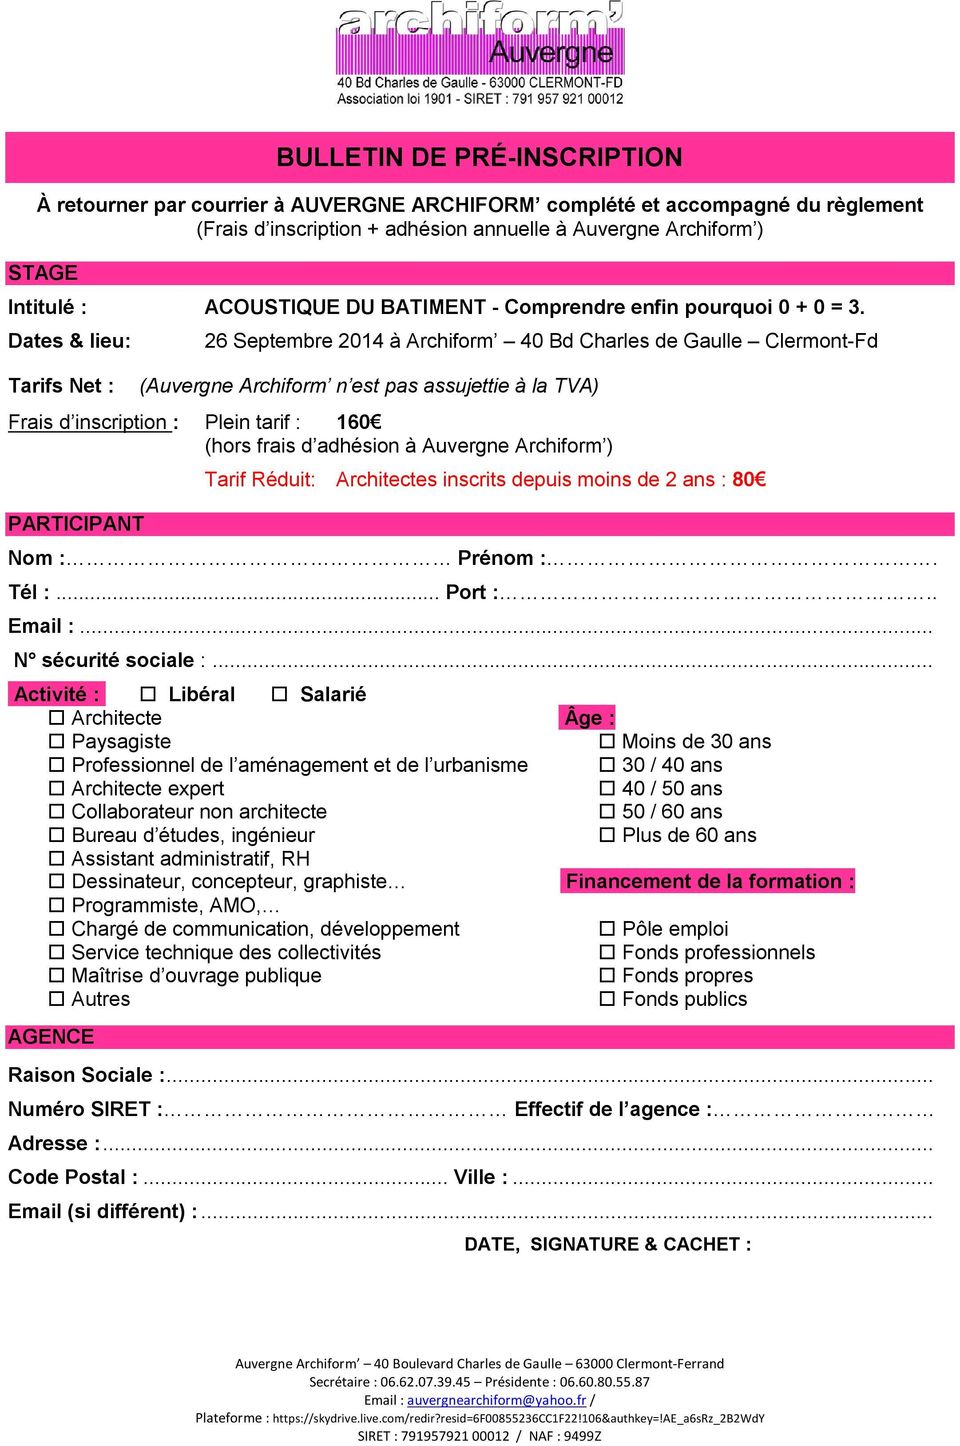 Dates & lieu: Tarifs Net : 26 Septembre 2014 à Archiform 40 Bd Charles de Gaulle Clermont-Fd (Auvergne Archiform n est pas assujettie à la TVA) Frais d inscription : Plein tarif : 160 (hors frais d